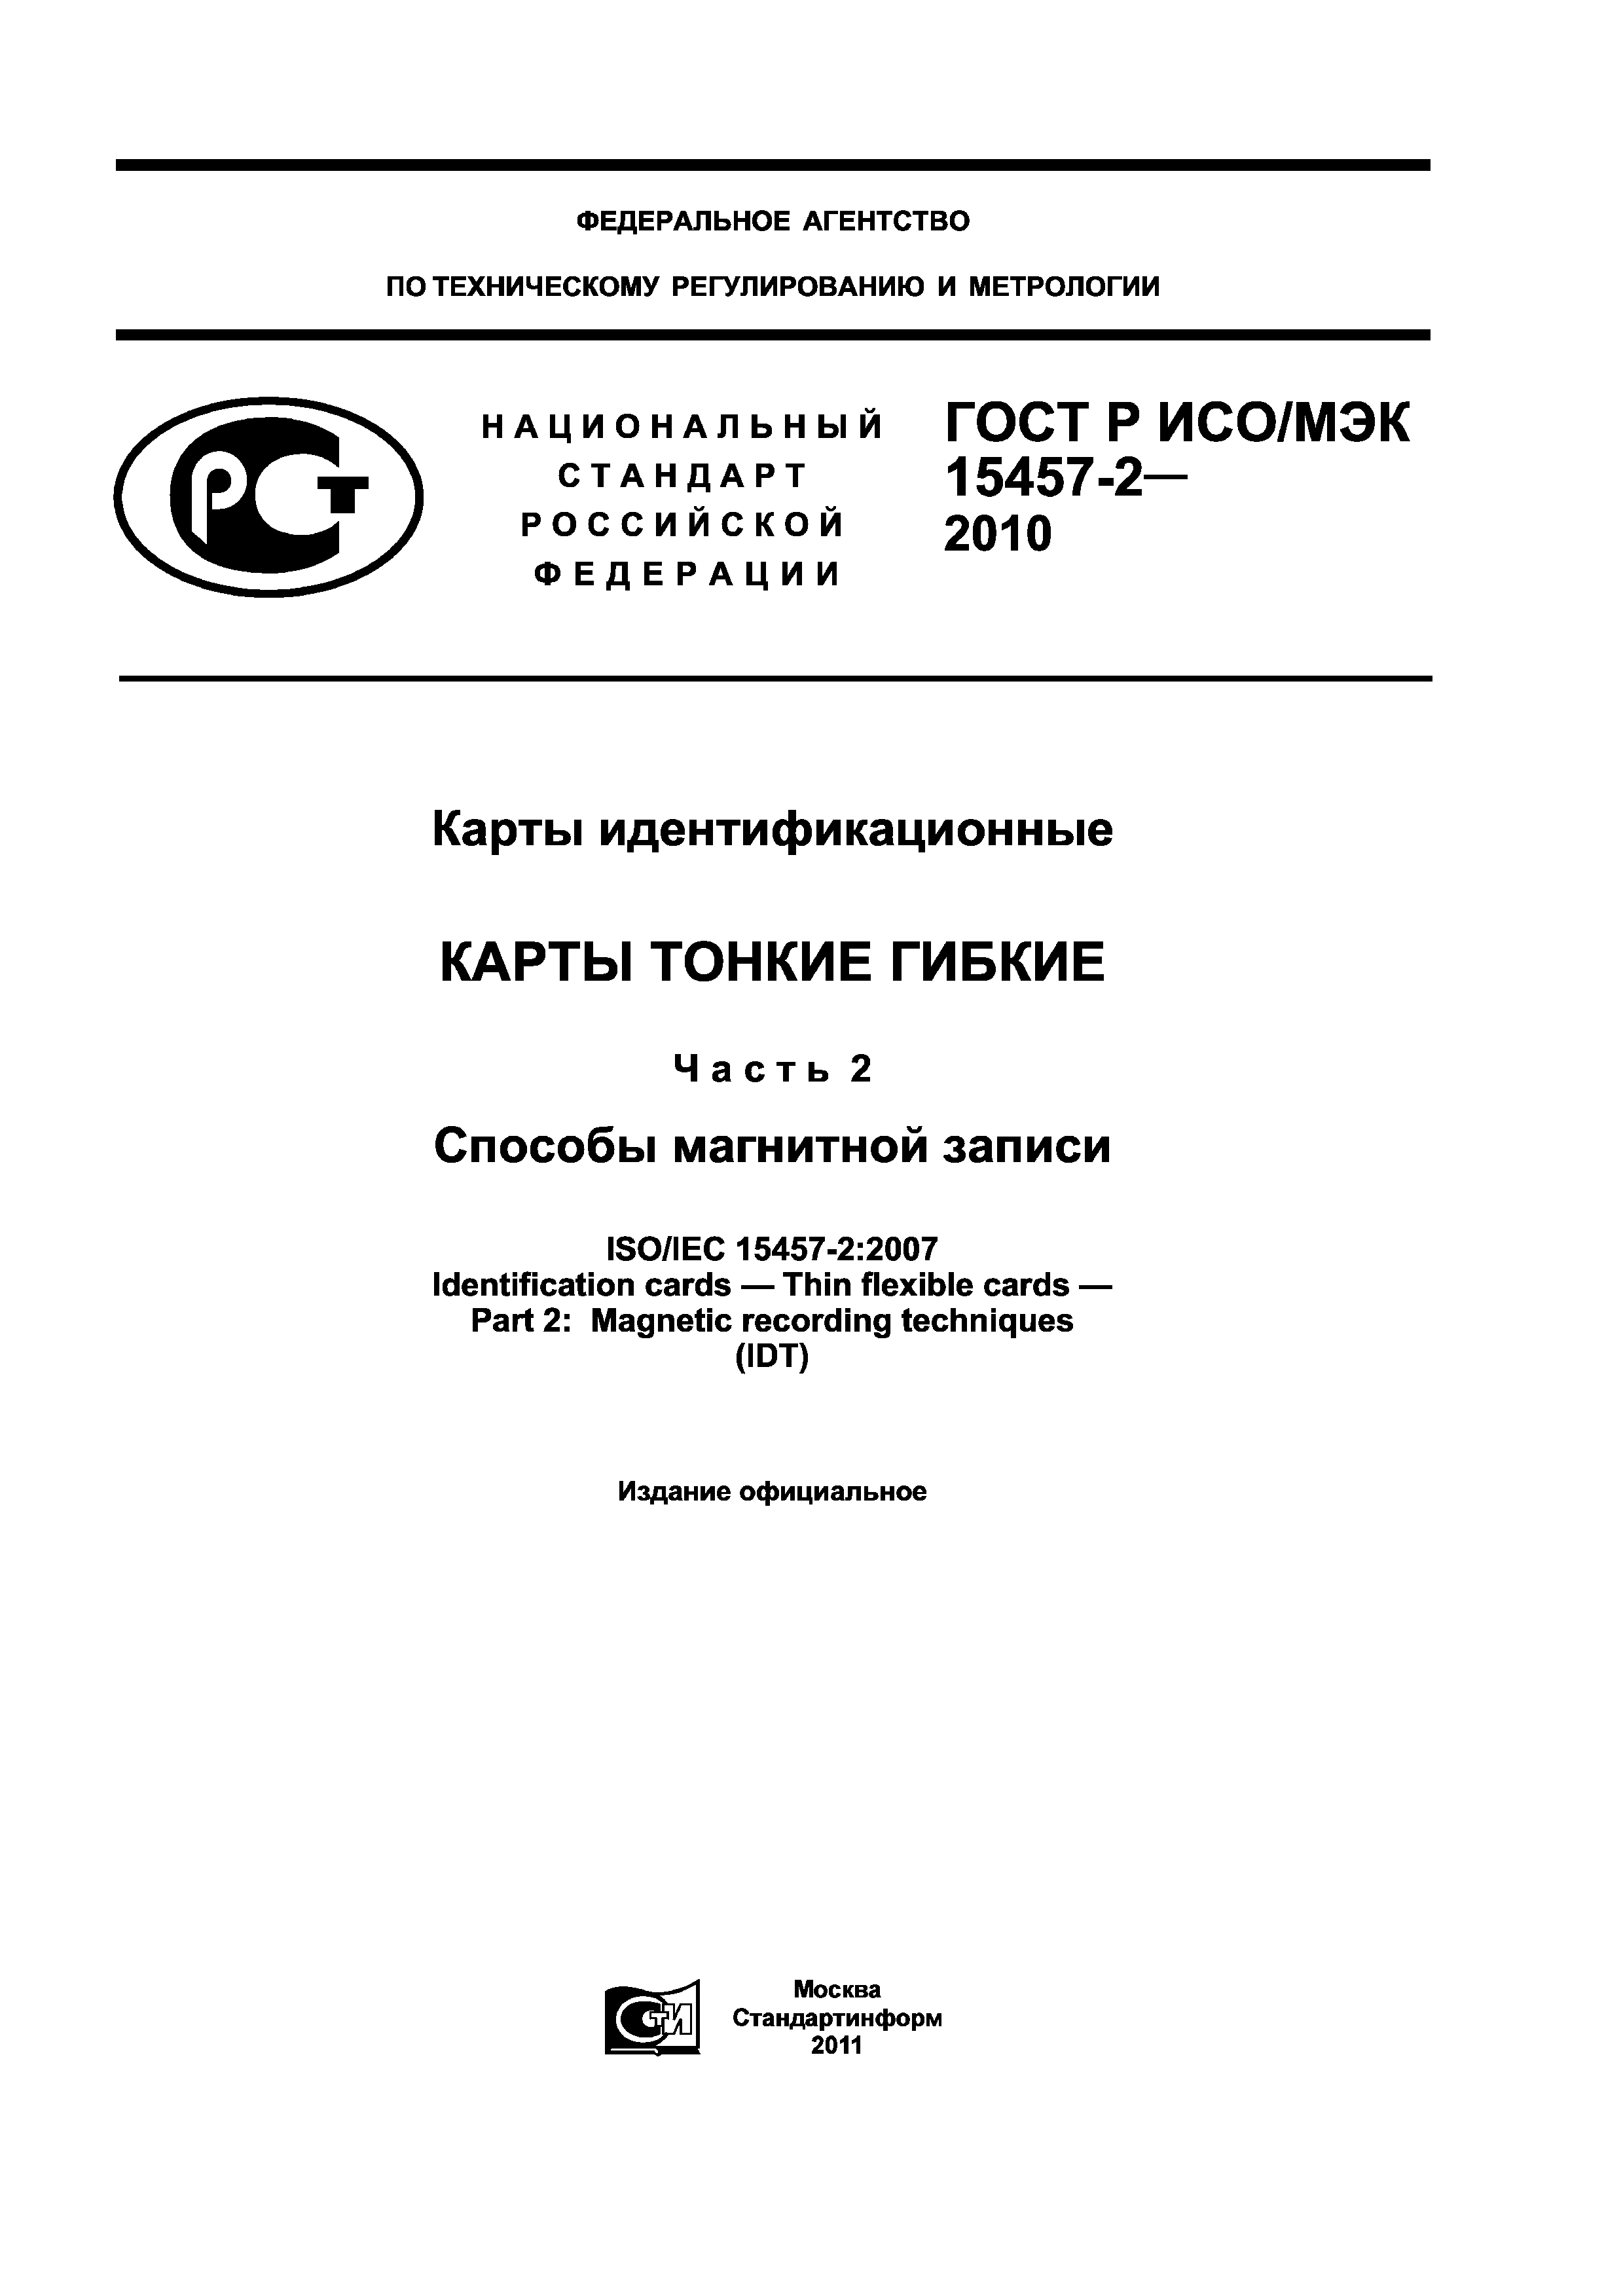 ГОСТ Р ИСО/МЭК 15457-2-2010